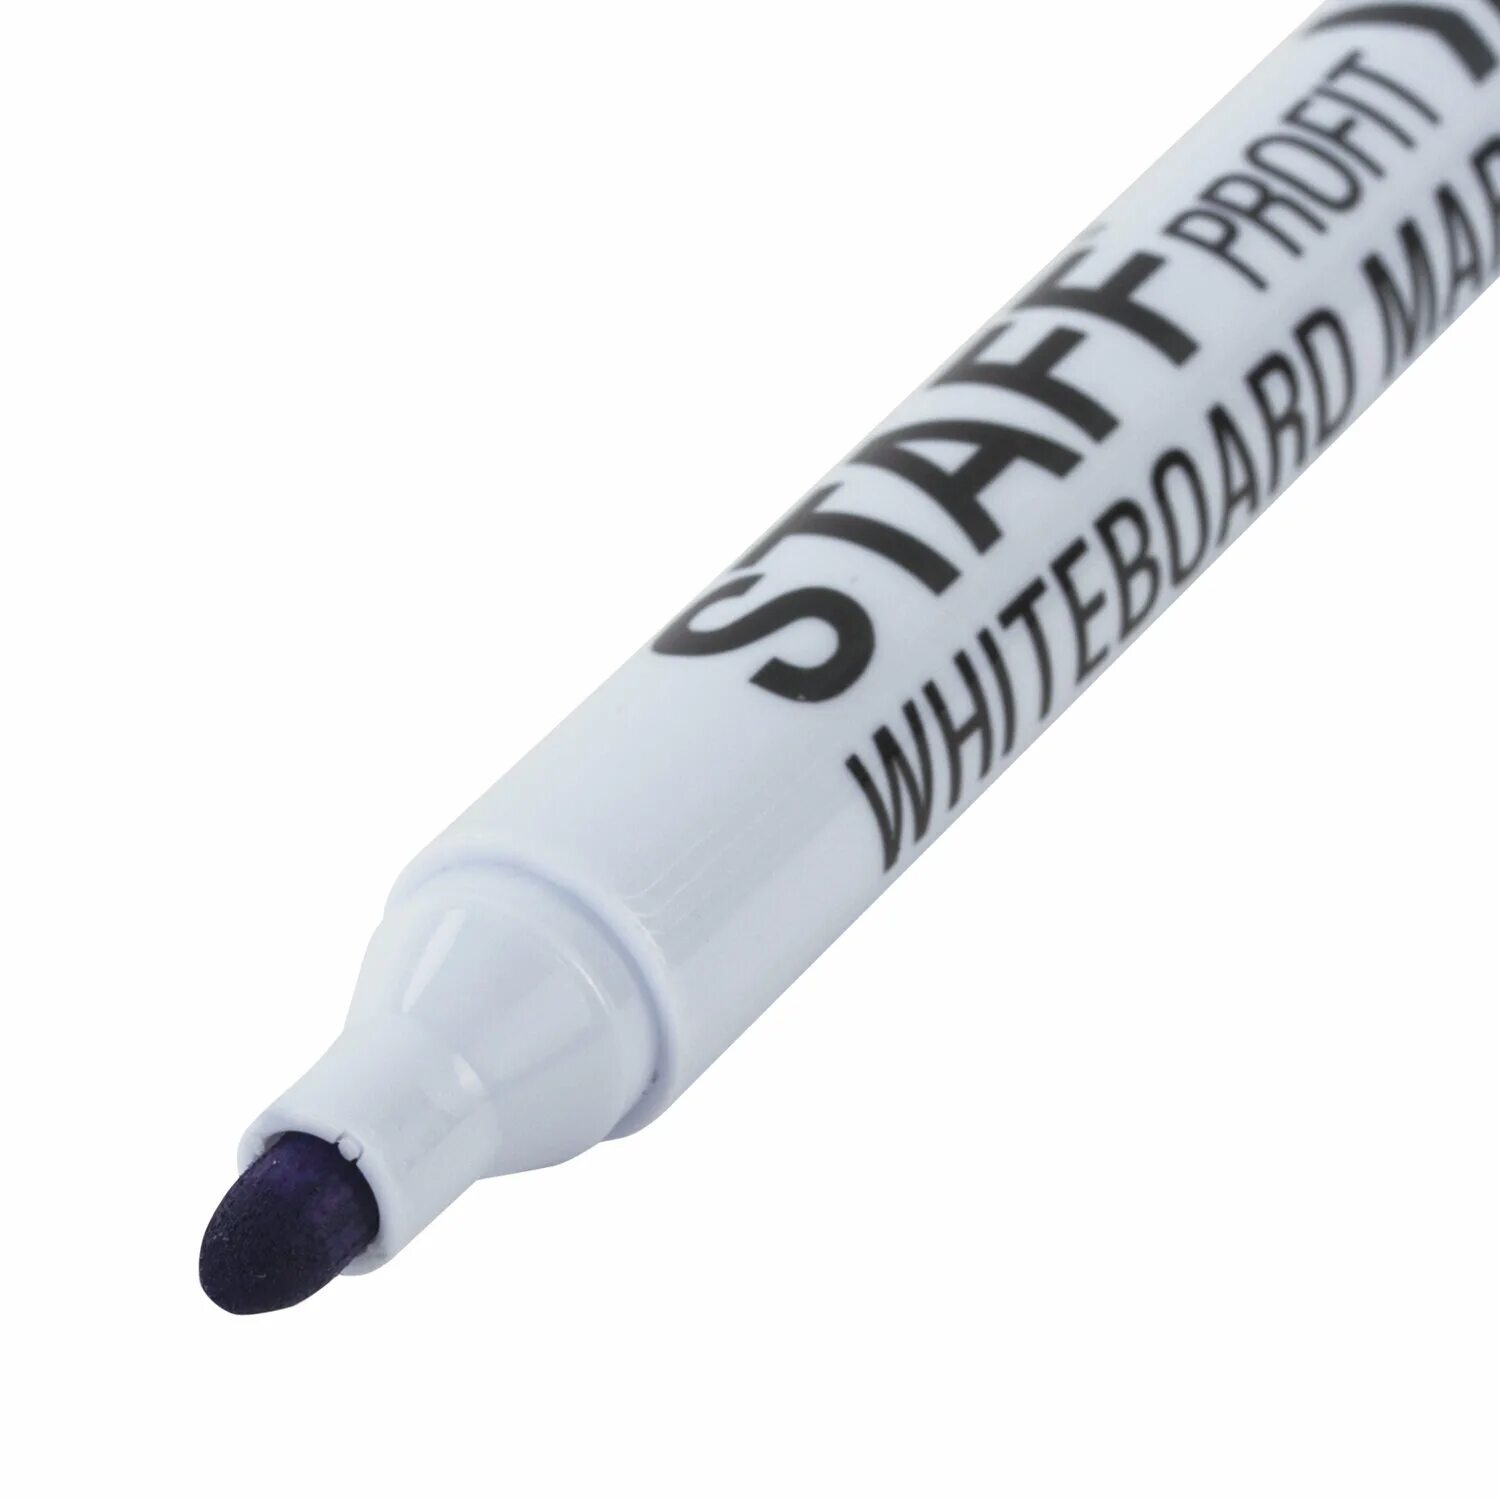 Staff маркер Basic, черный. Маркеры стираемые для белой доски набор 4цвета staff WBD-644 2.5мм. Белый маркер. Маркеры для доски стирающиеся стафф. Купить стираемые маркеры